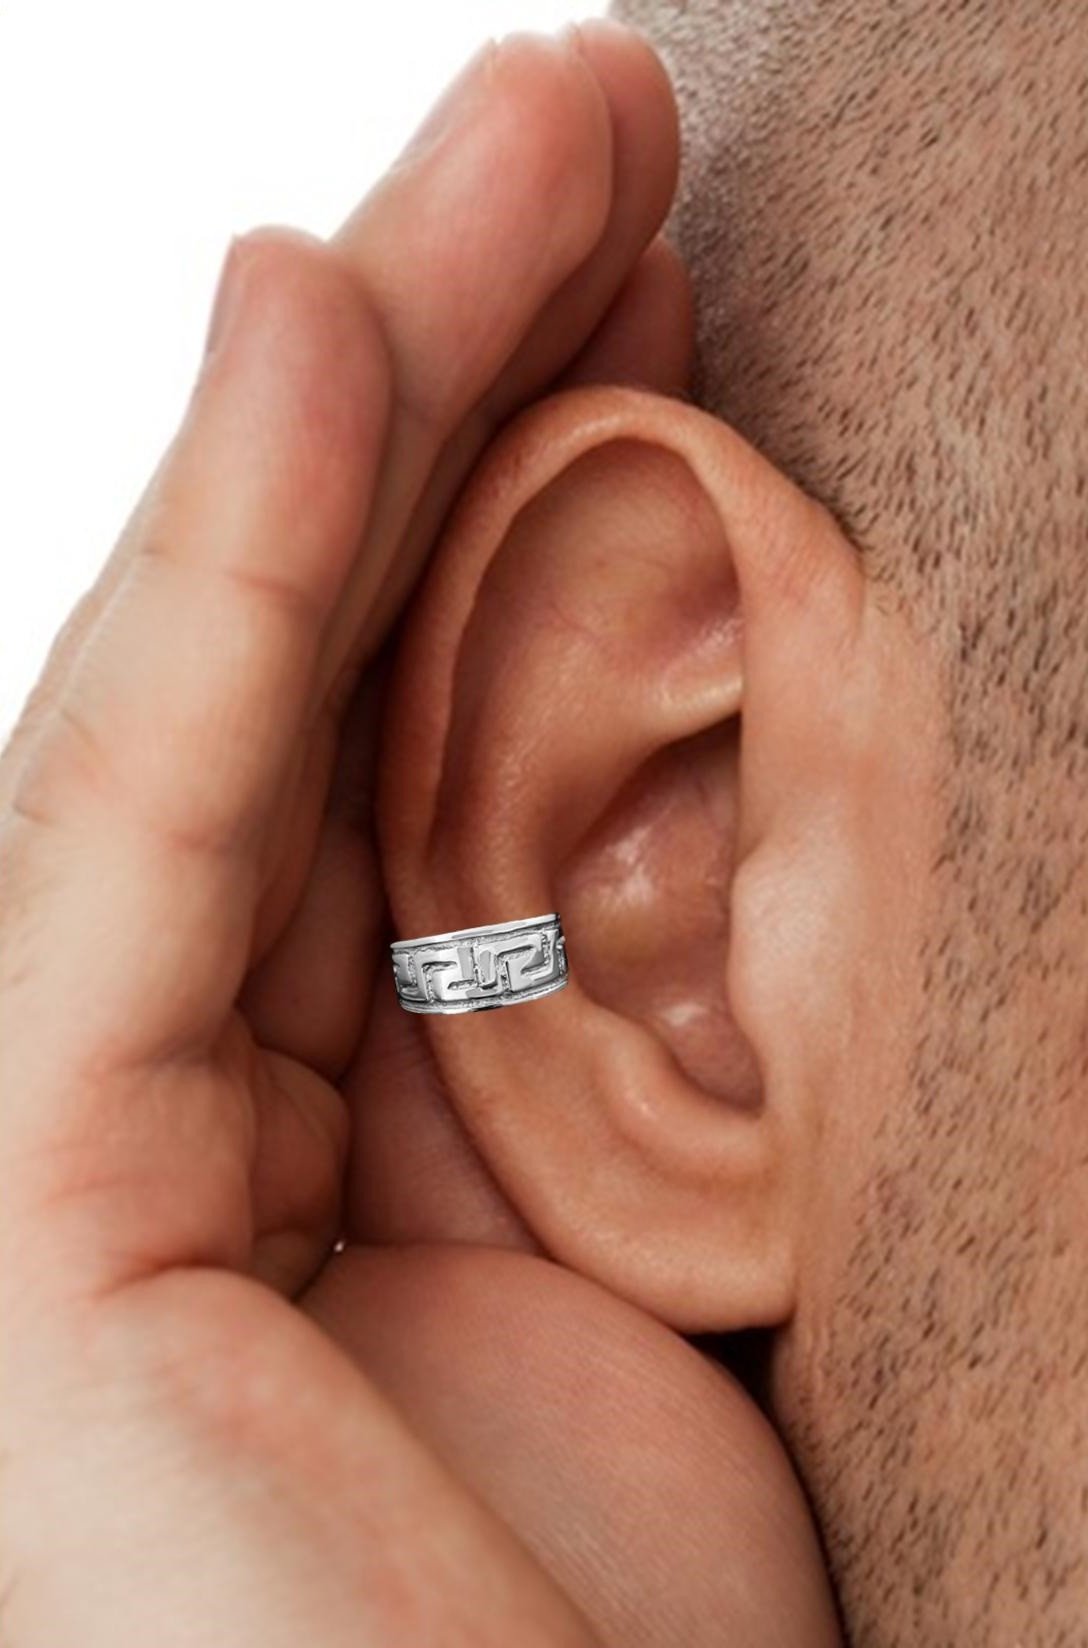 non-pierced ear cuff earrings - Ear Charms